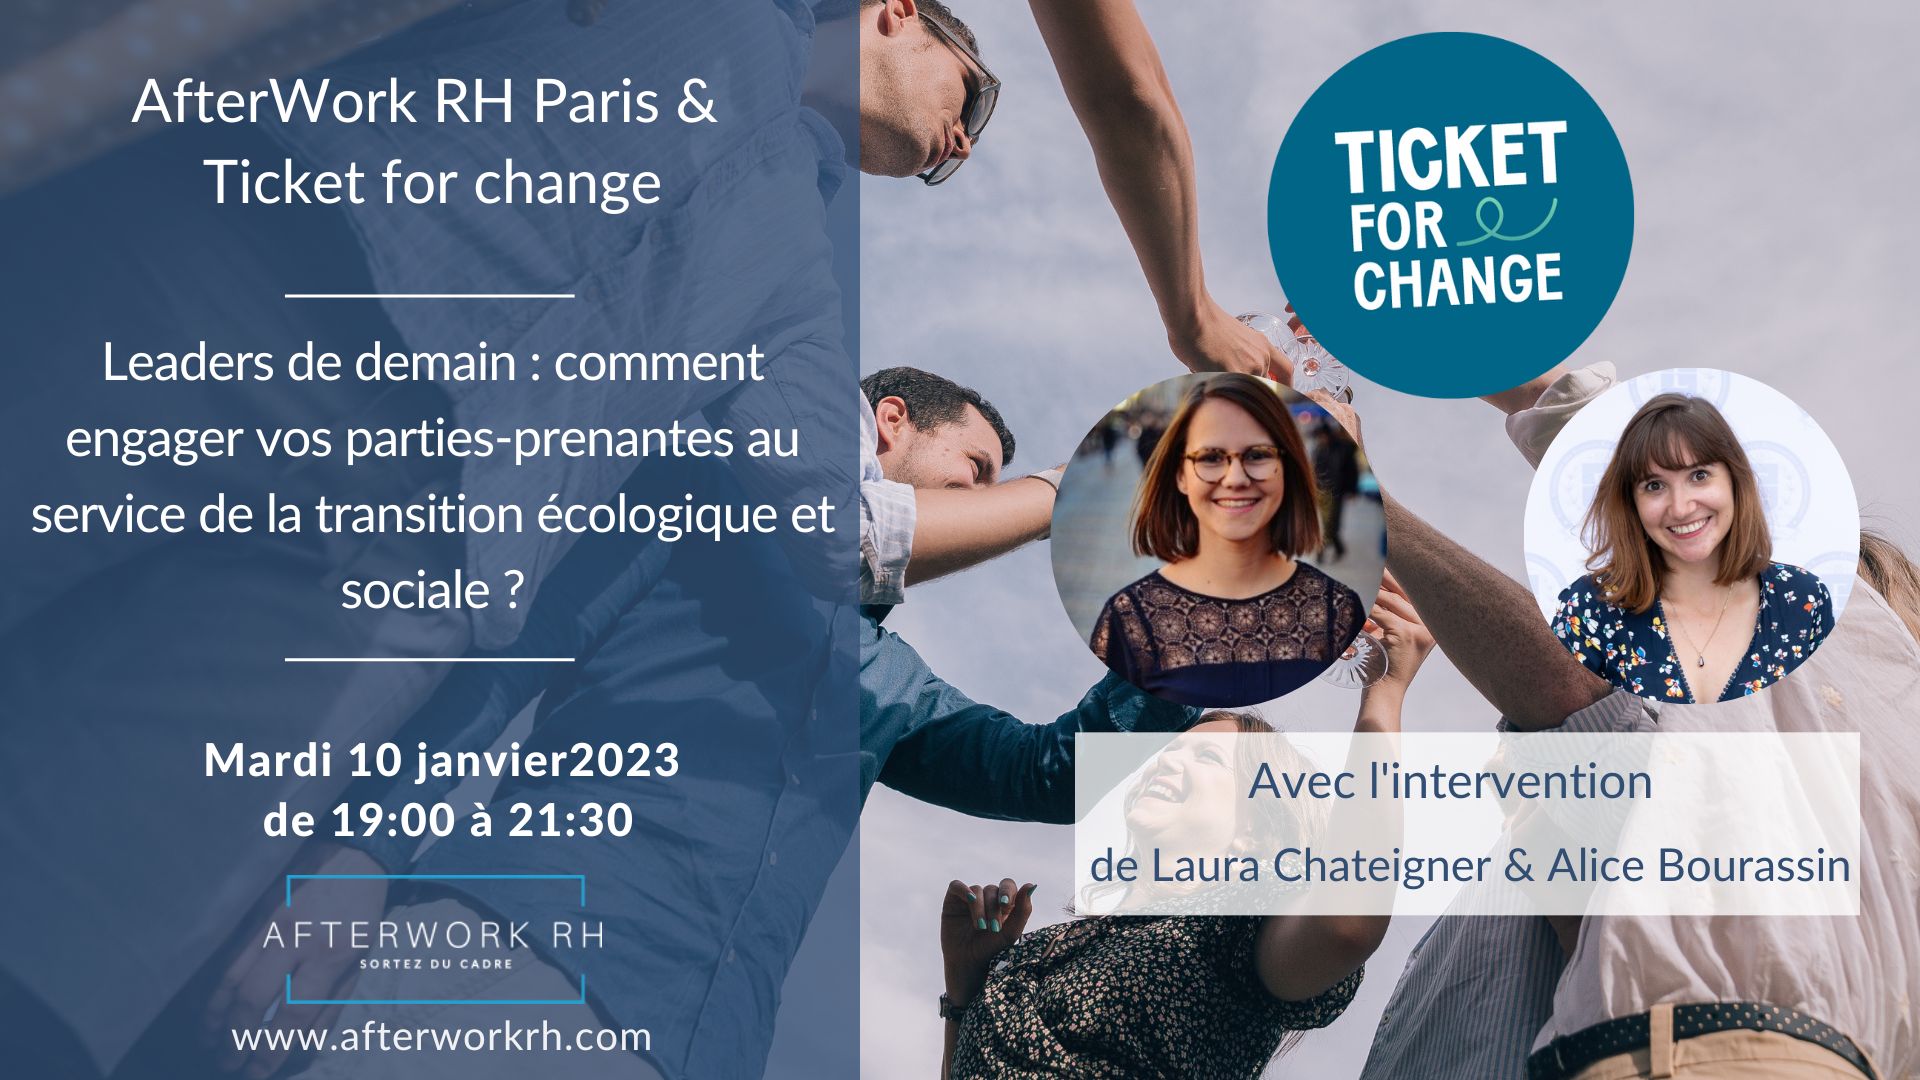 Evénement RH Janvier 2023 Paris - Ticket for change